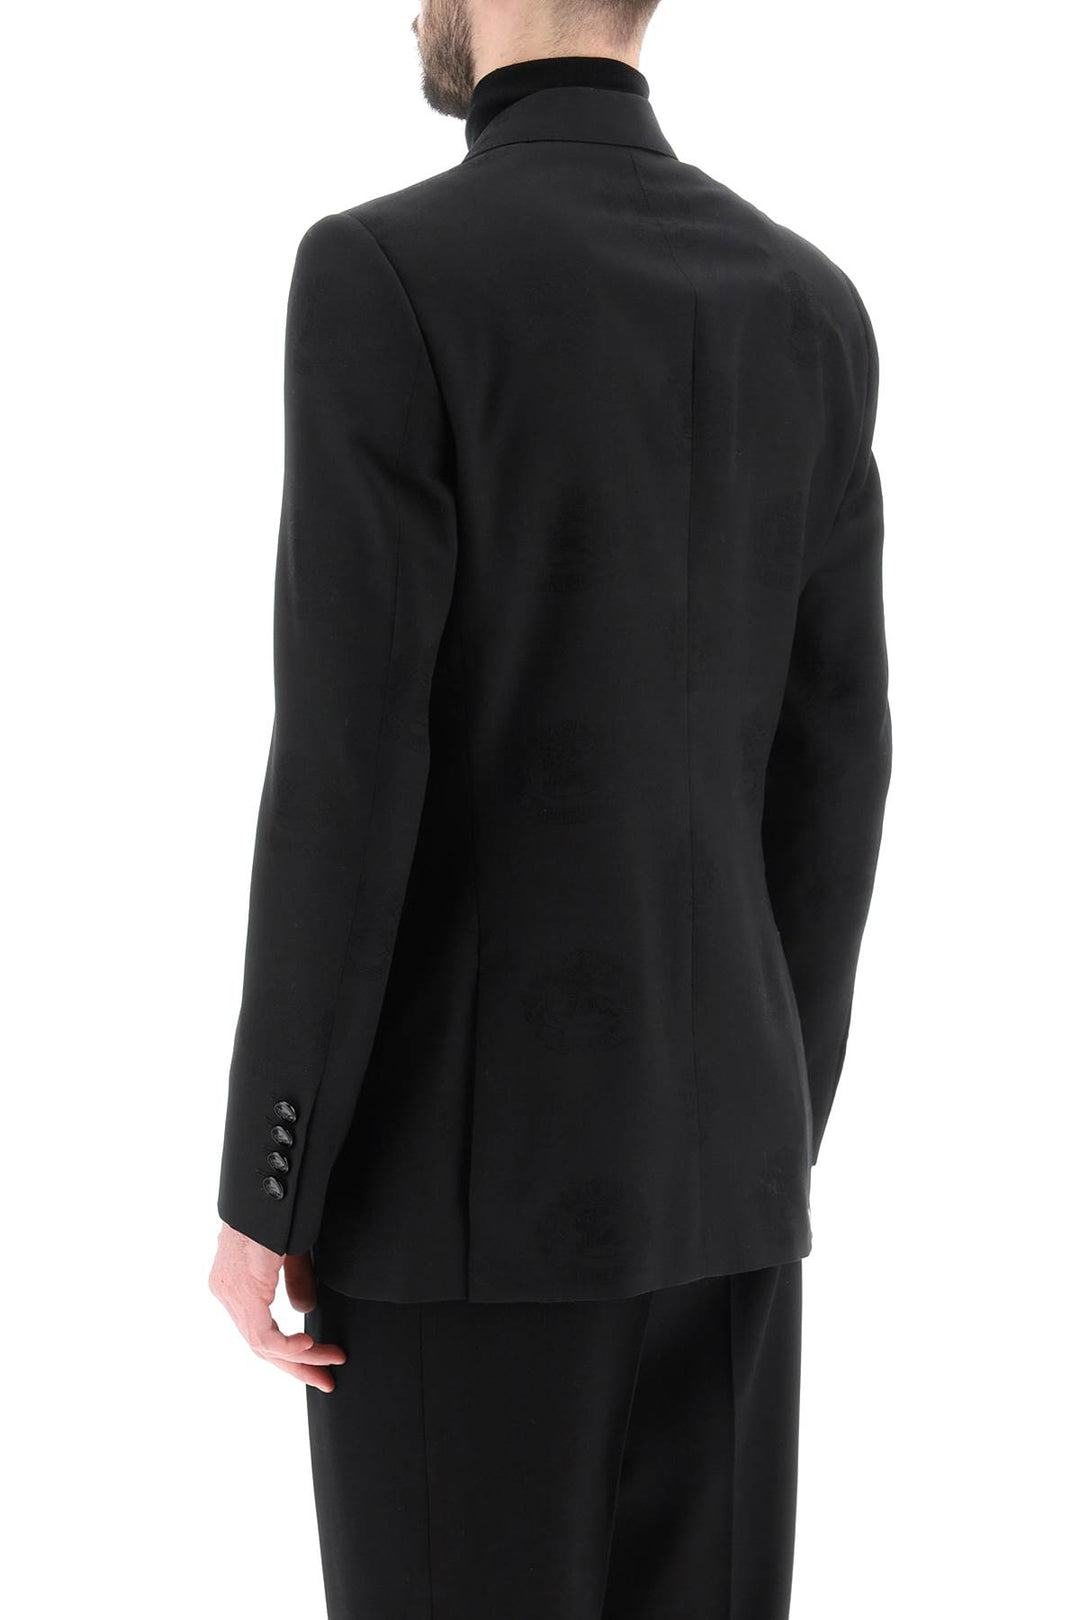 Burberry Tuxedo Jacket With Jacquard Details   Nero